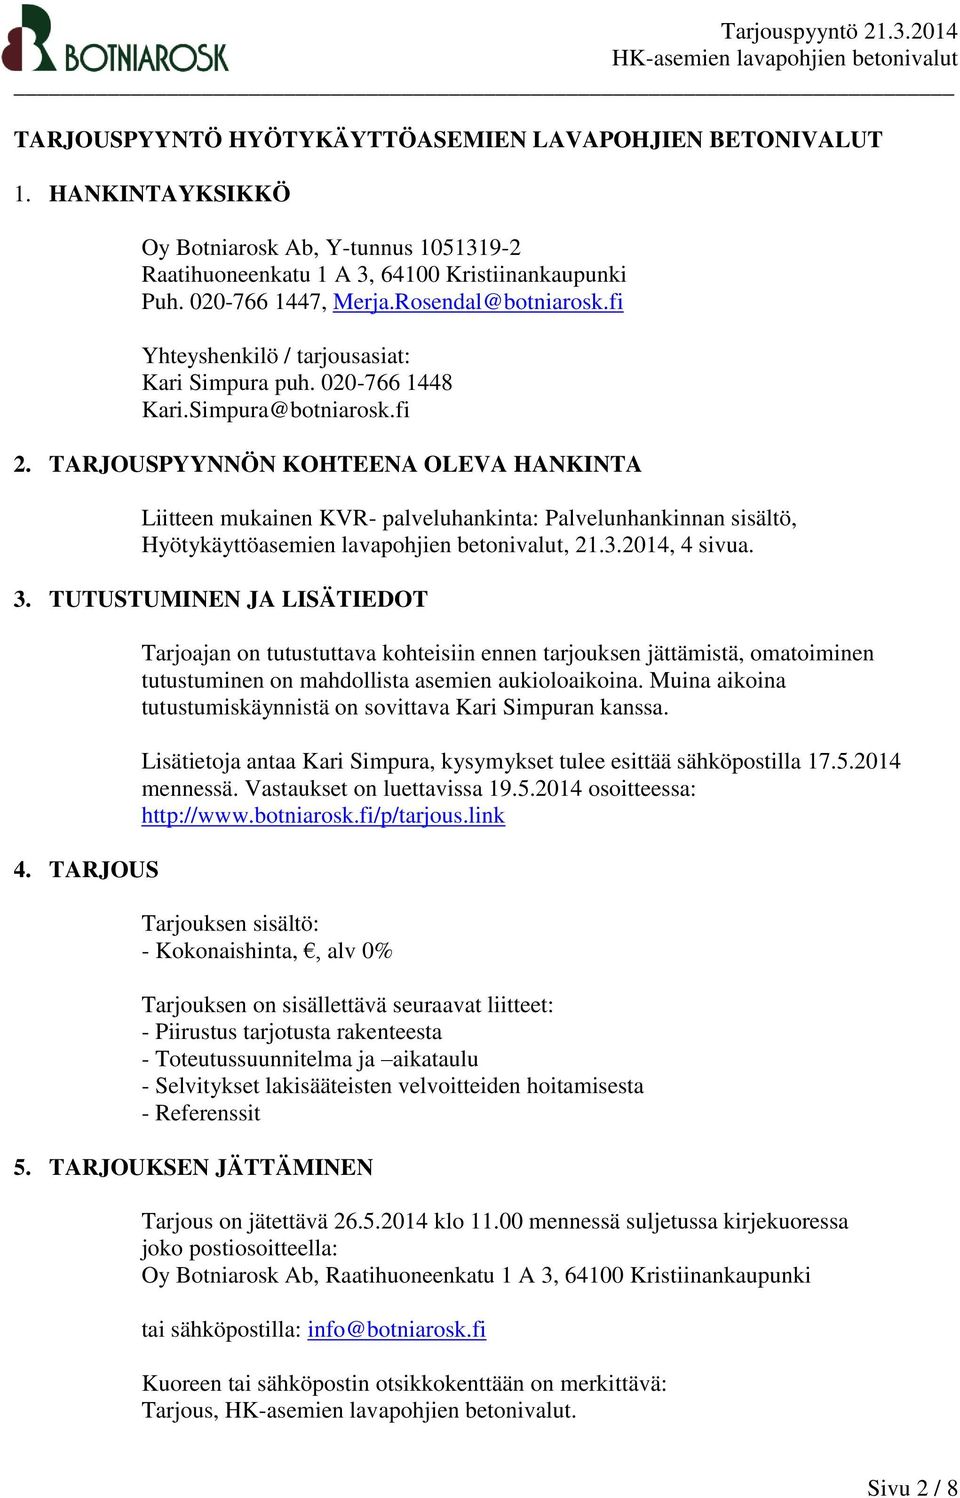 TARJOUSPYYNNÖN KOHTEENA OLEVA HANKINTA Liitteen mukainen KVR- palveluhankinta: Palvelunhankinnan sisältö, Hyötykäyttöasemien lavapohjien betonivalut, 21.3.2014, 4 sivua. 3.